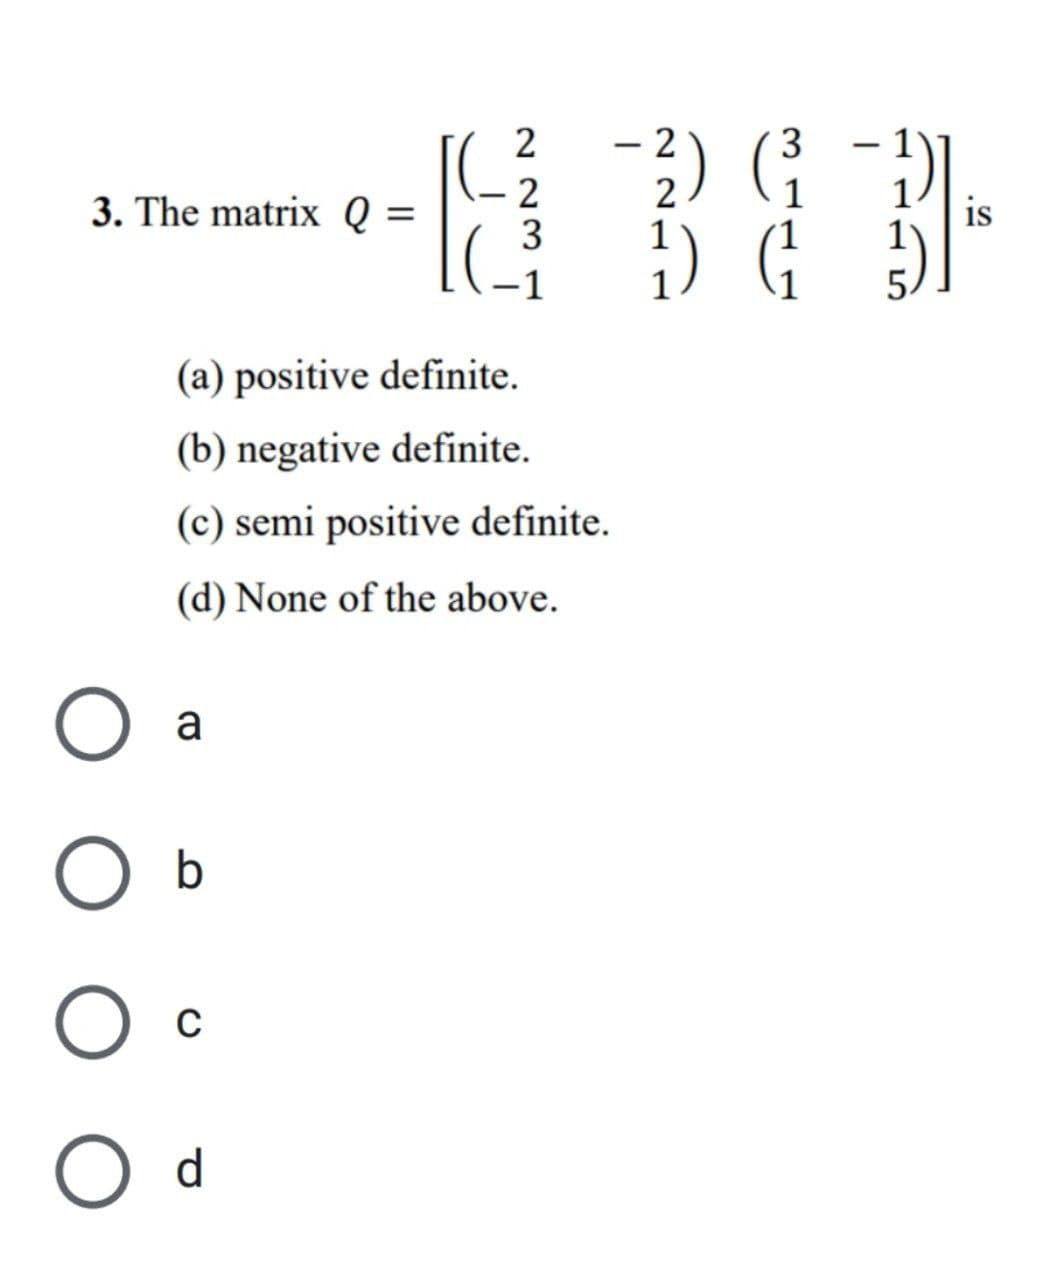 3. The matrix Q = =
a
2
2
3
(a) positive definite.
(b) negative definite.
(c) semi positive definite.
(d) None of the above.
O b
O C
с
O d
2
3
-²) (₁
1) G₁
2
31-
is